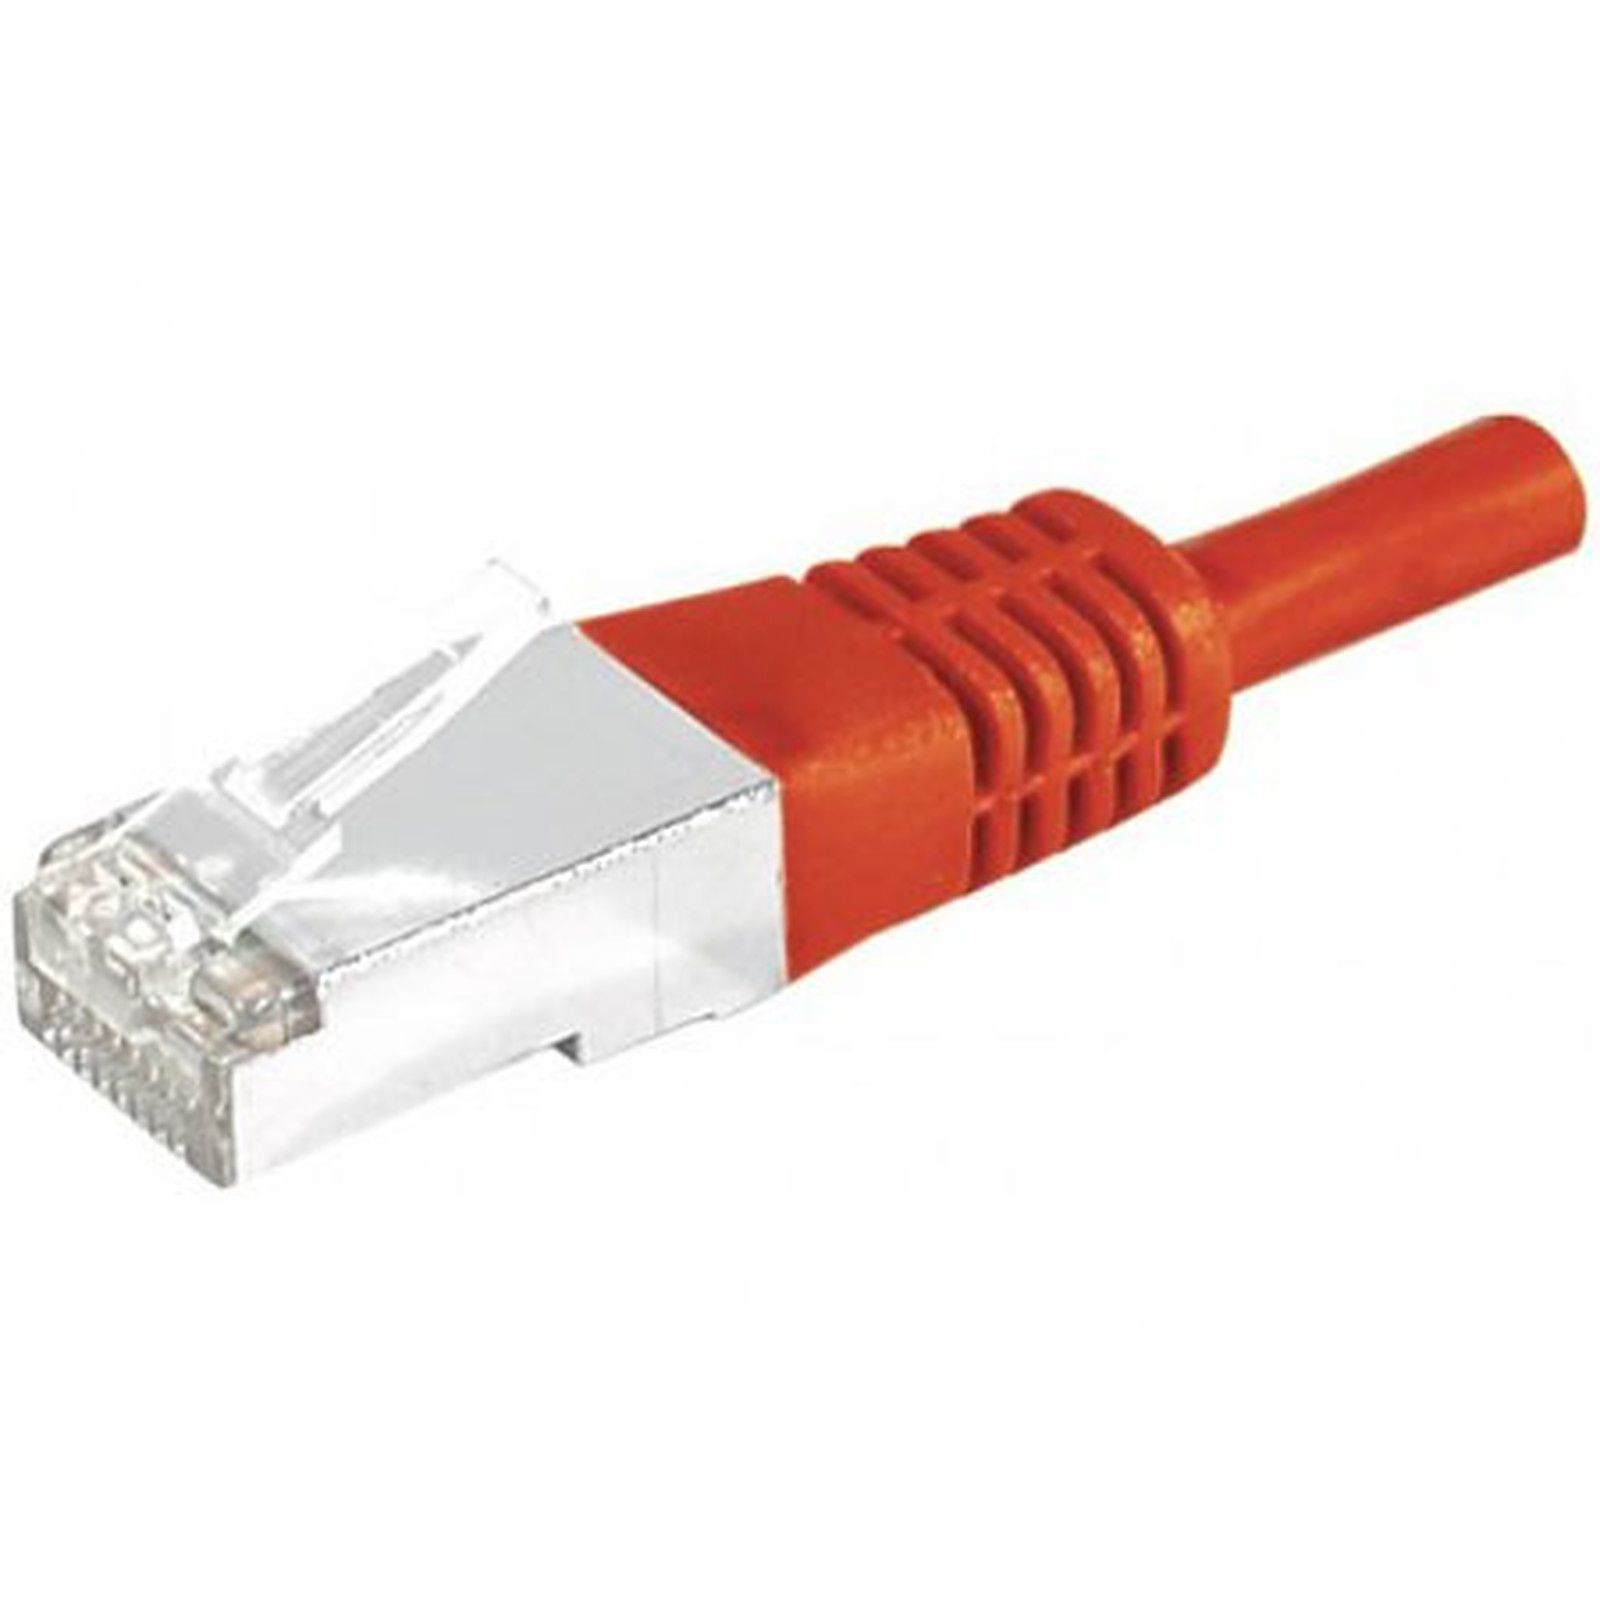 Cable RJ45 categorie 6a S/FTP 1 m (Rouge) - Cable RJ45 Generique